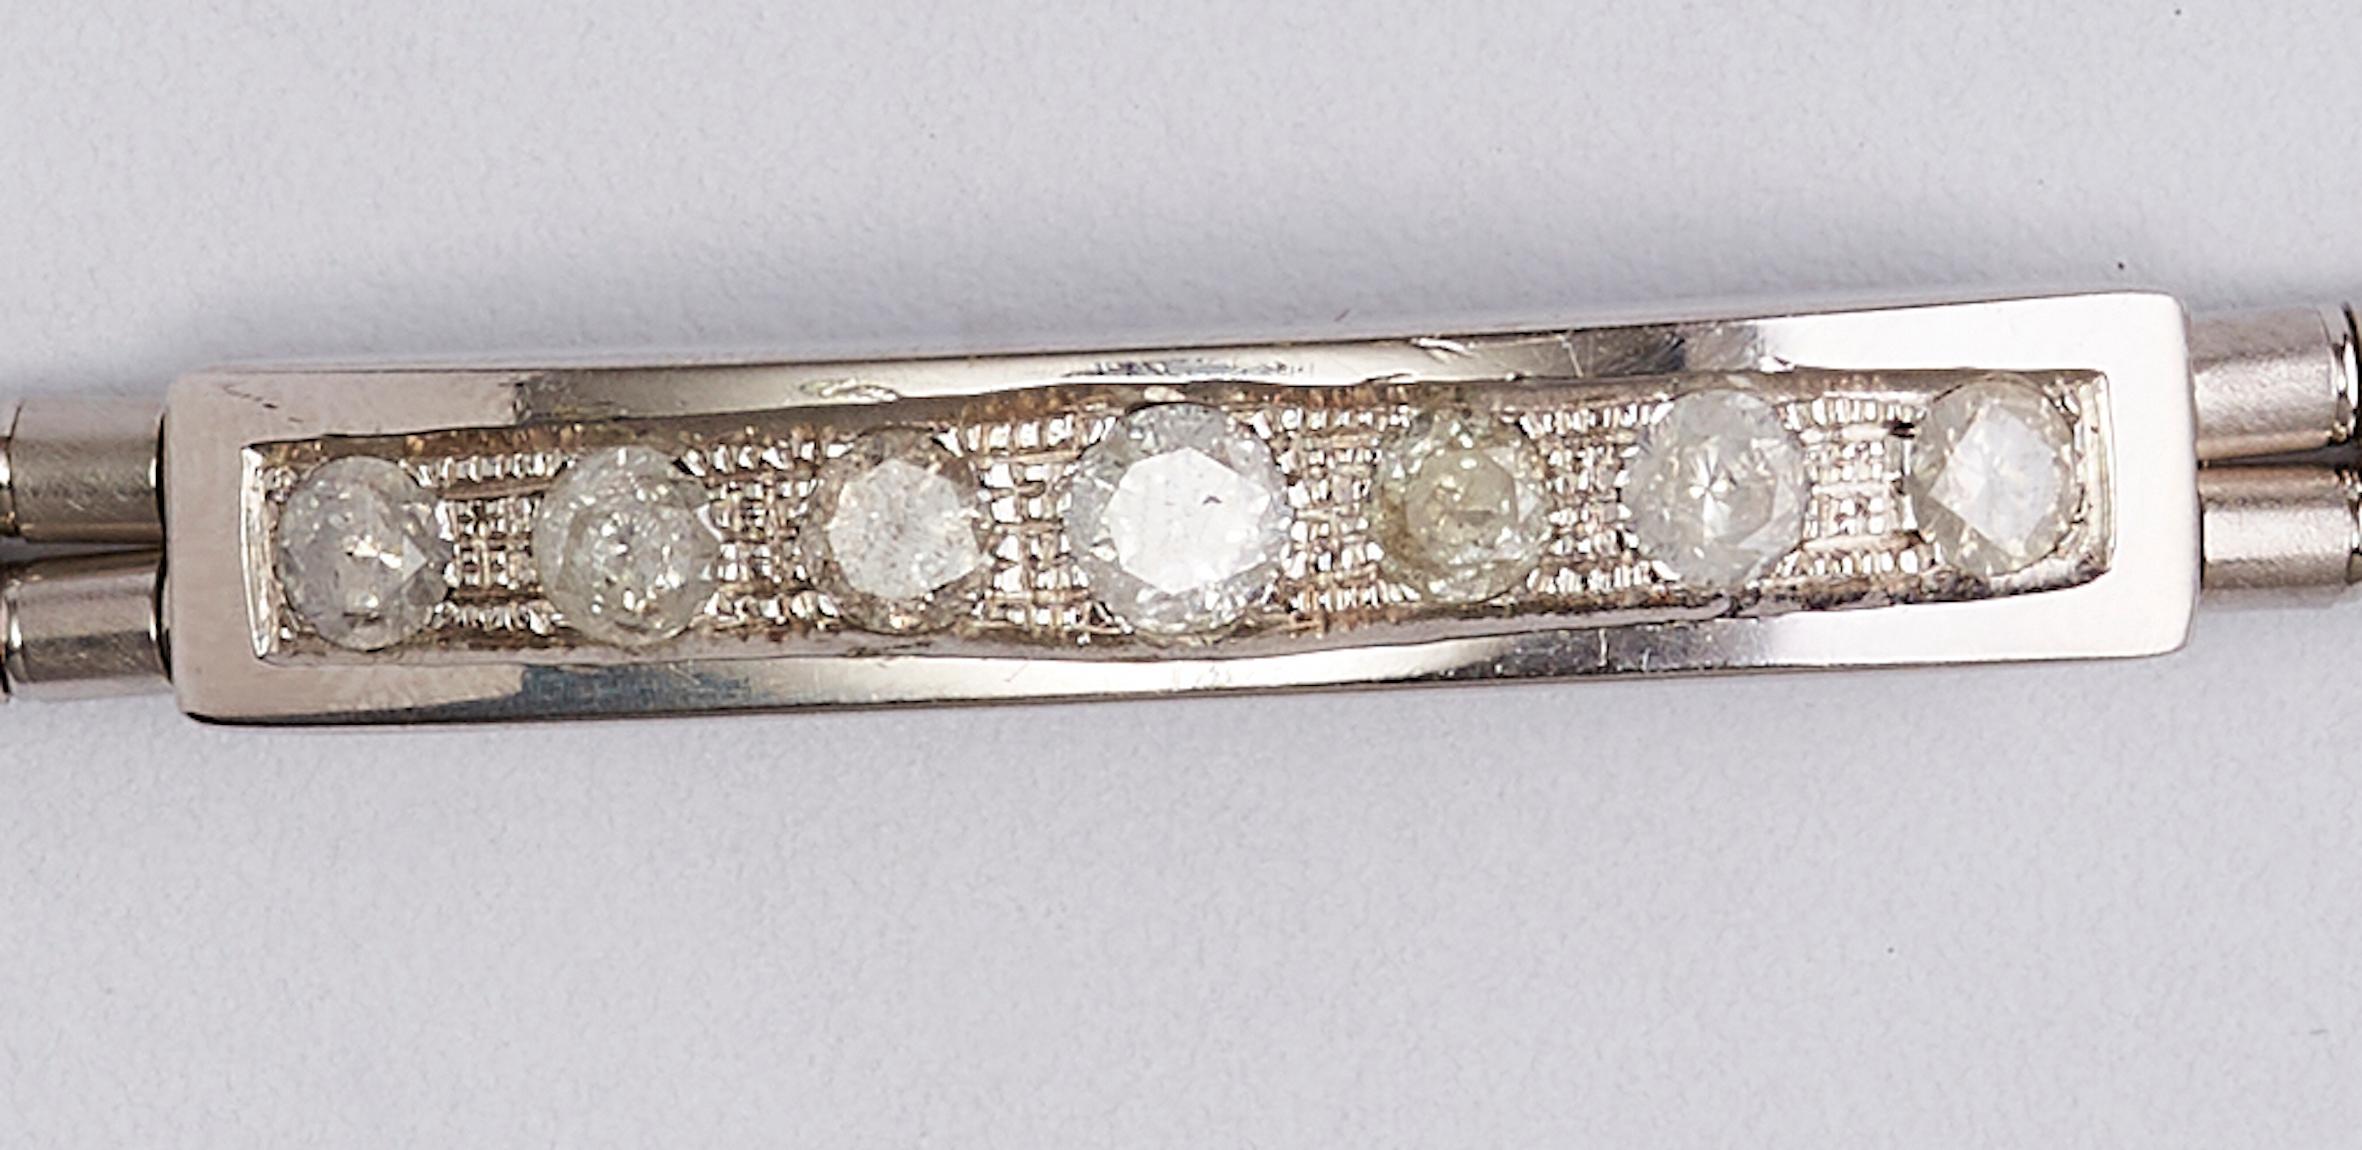 bracelet de diamants en or blanc 18k 

Bracelet étonnant, avec un type de conception unique avec une plaque de diamants.
7 diamants sur une plaque et sur les côtés une bande spéciale faite de perles. 
Diamants ronds d'un total de 2,10 carats H